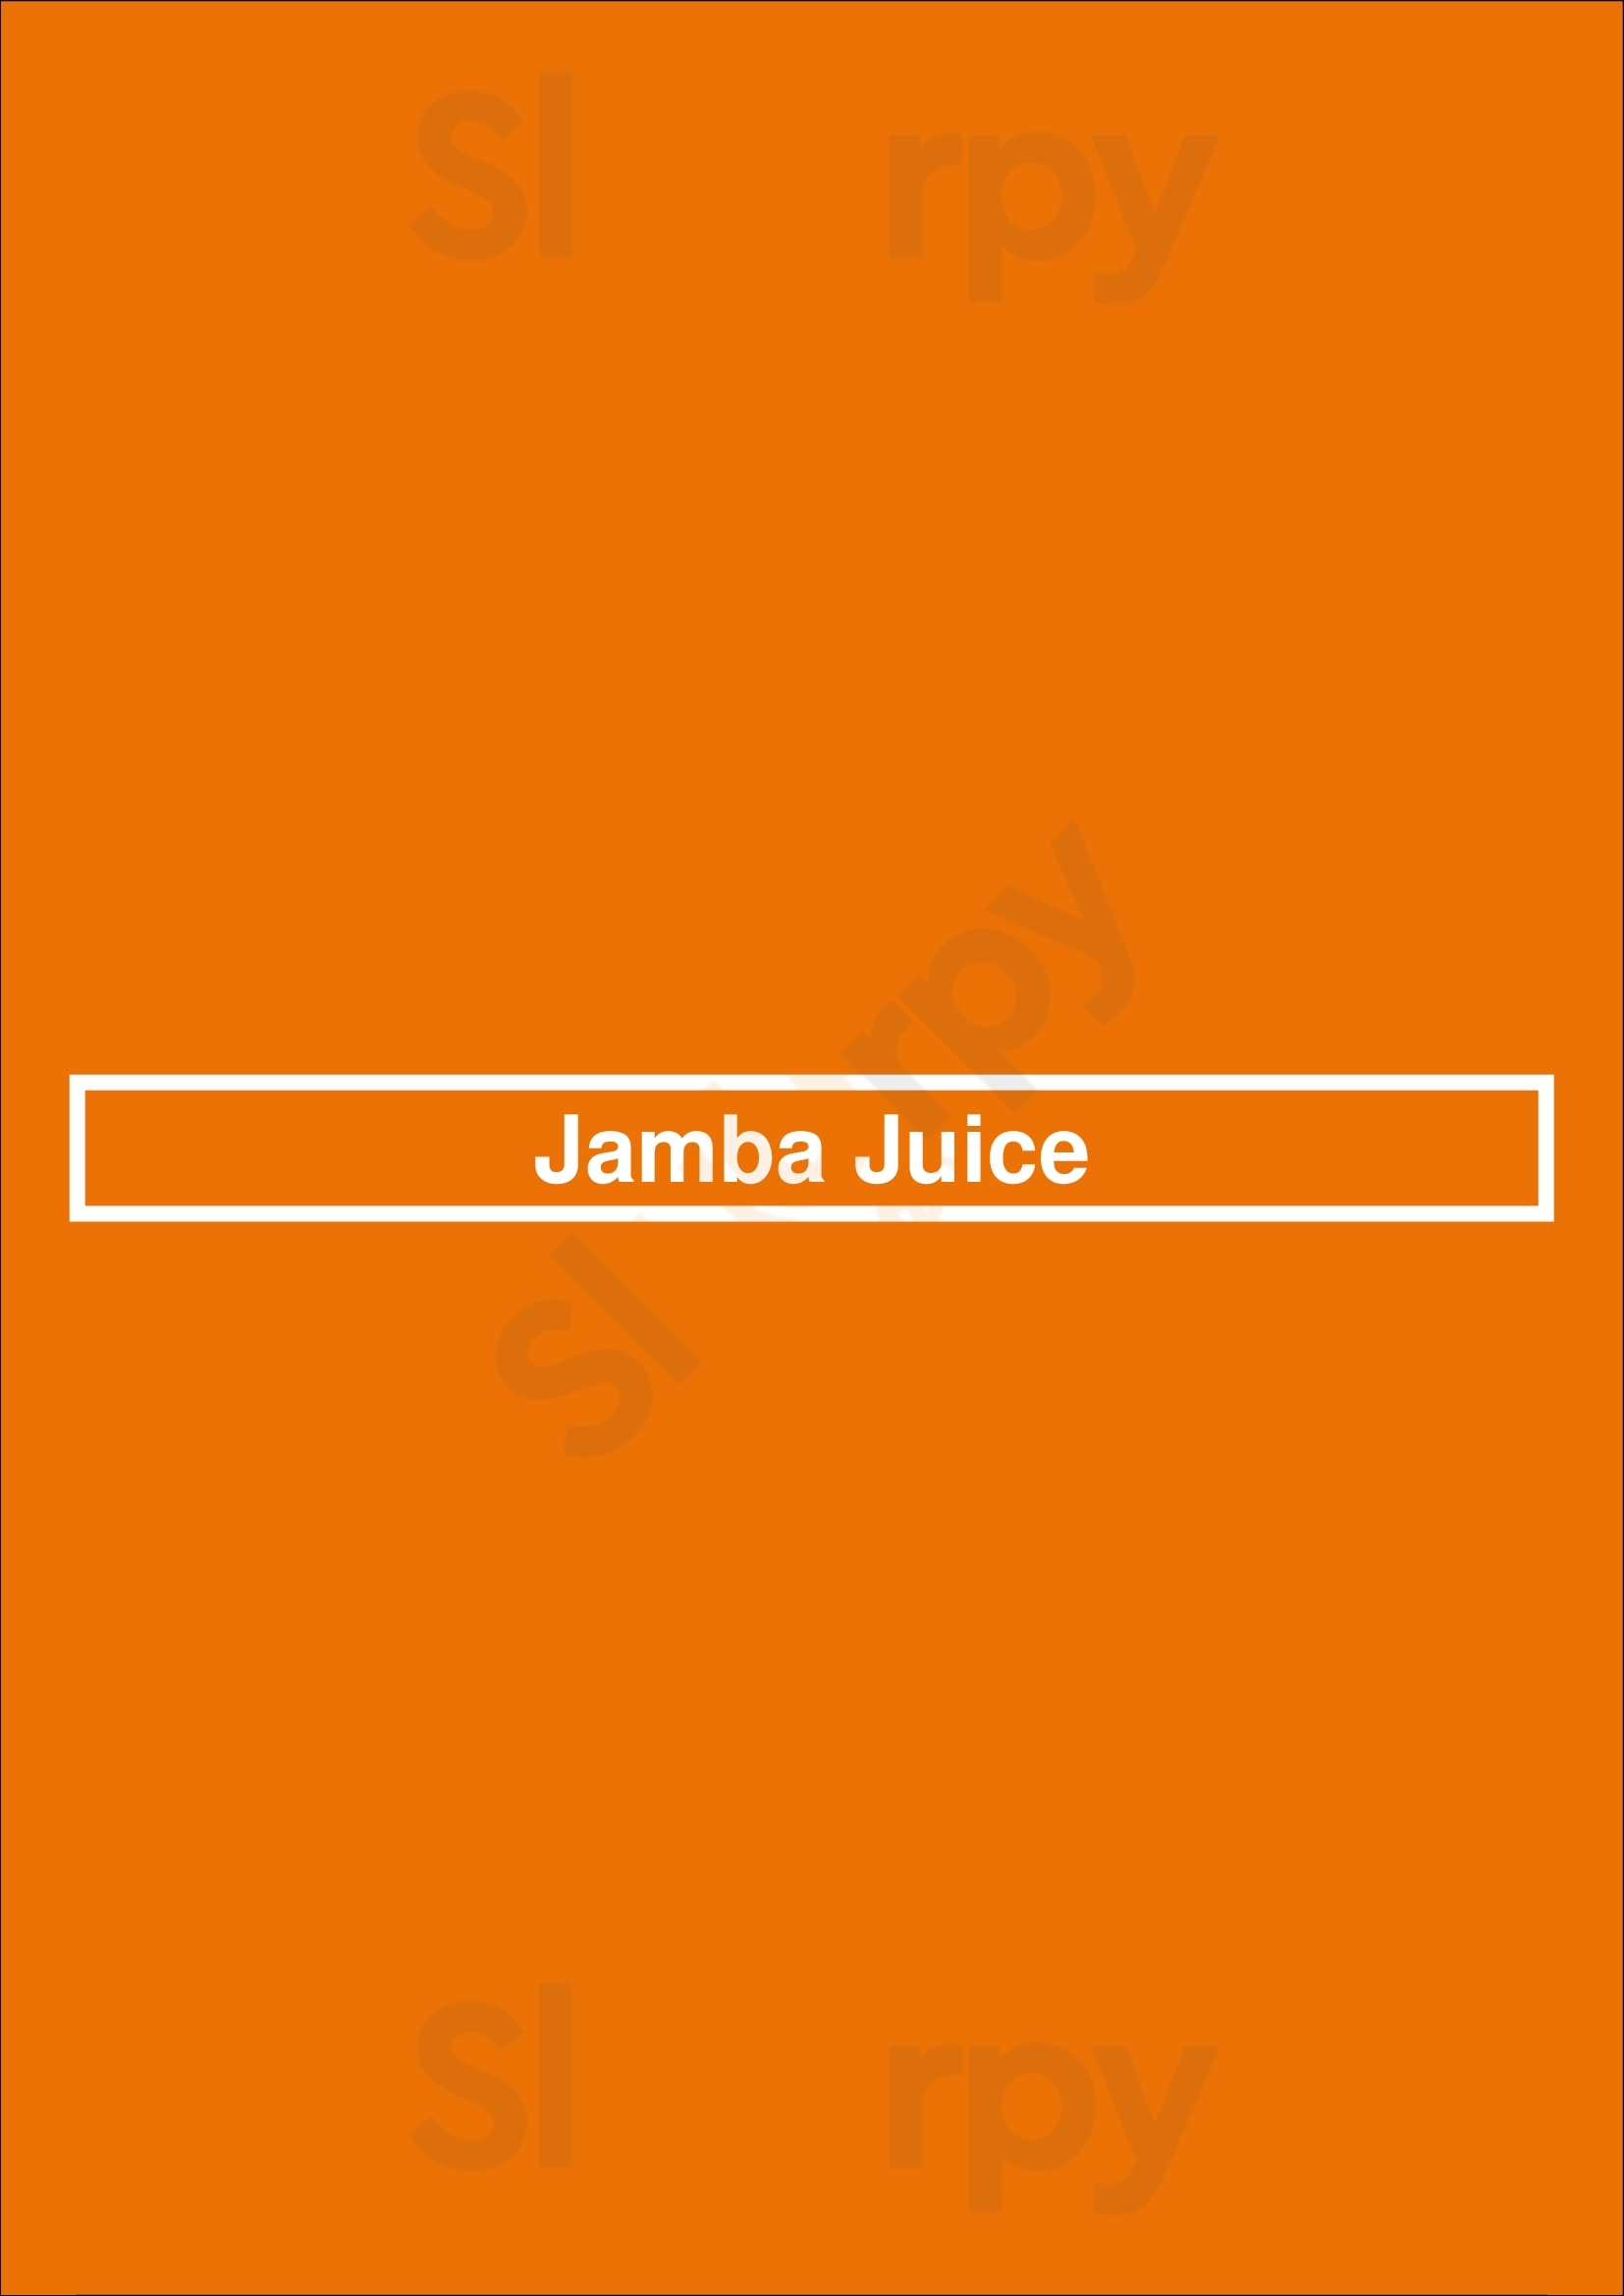 Jamba Juice San Jose Menu - 1